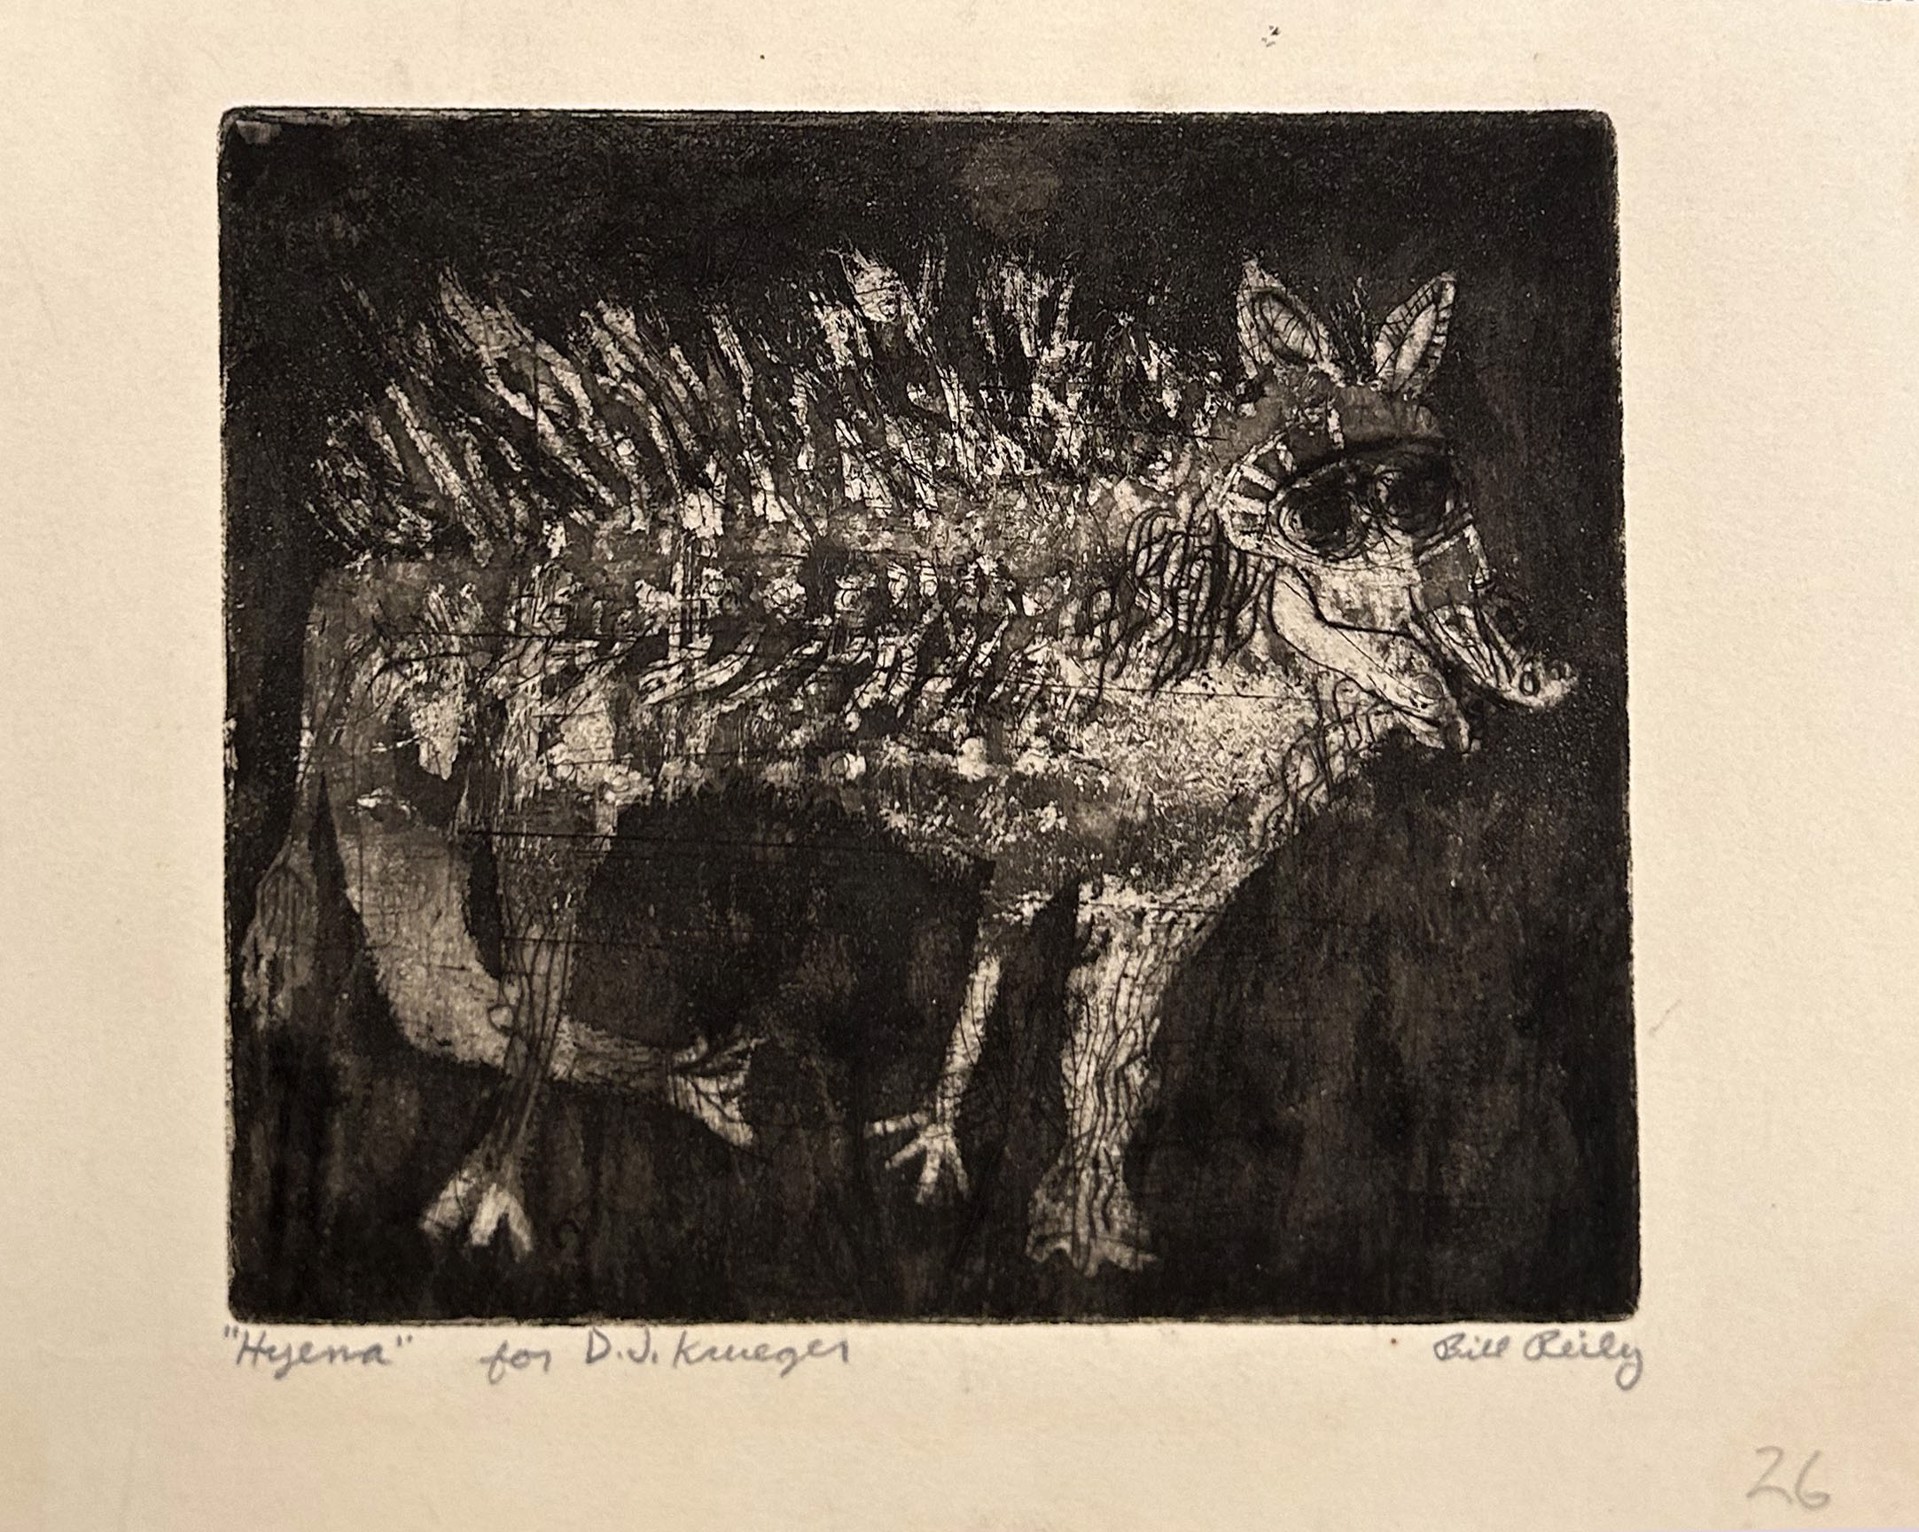 26. Steer ("Hyena" for D.J. Krueger) by Bill Reily Prints